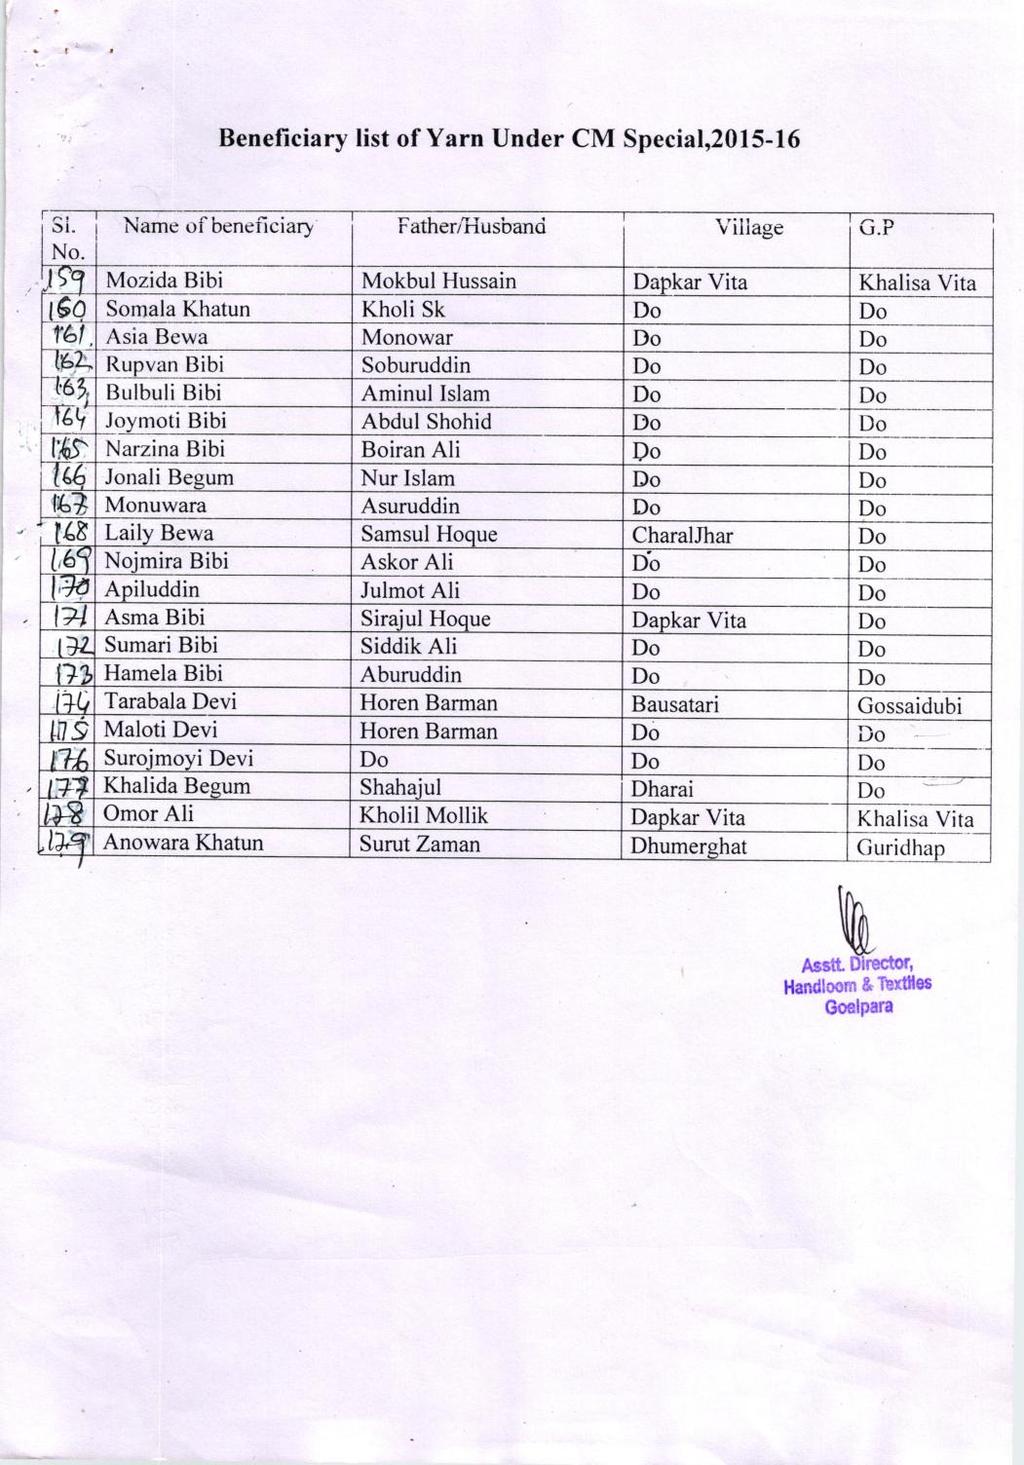 Beneficiary list of Yarn Under CM Special,2015-16 I rr I Si" i Namc.f beneficiary i No.